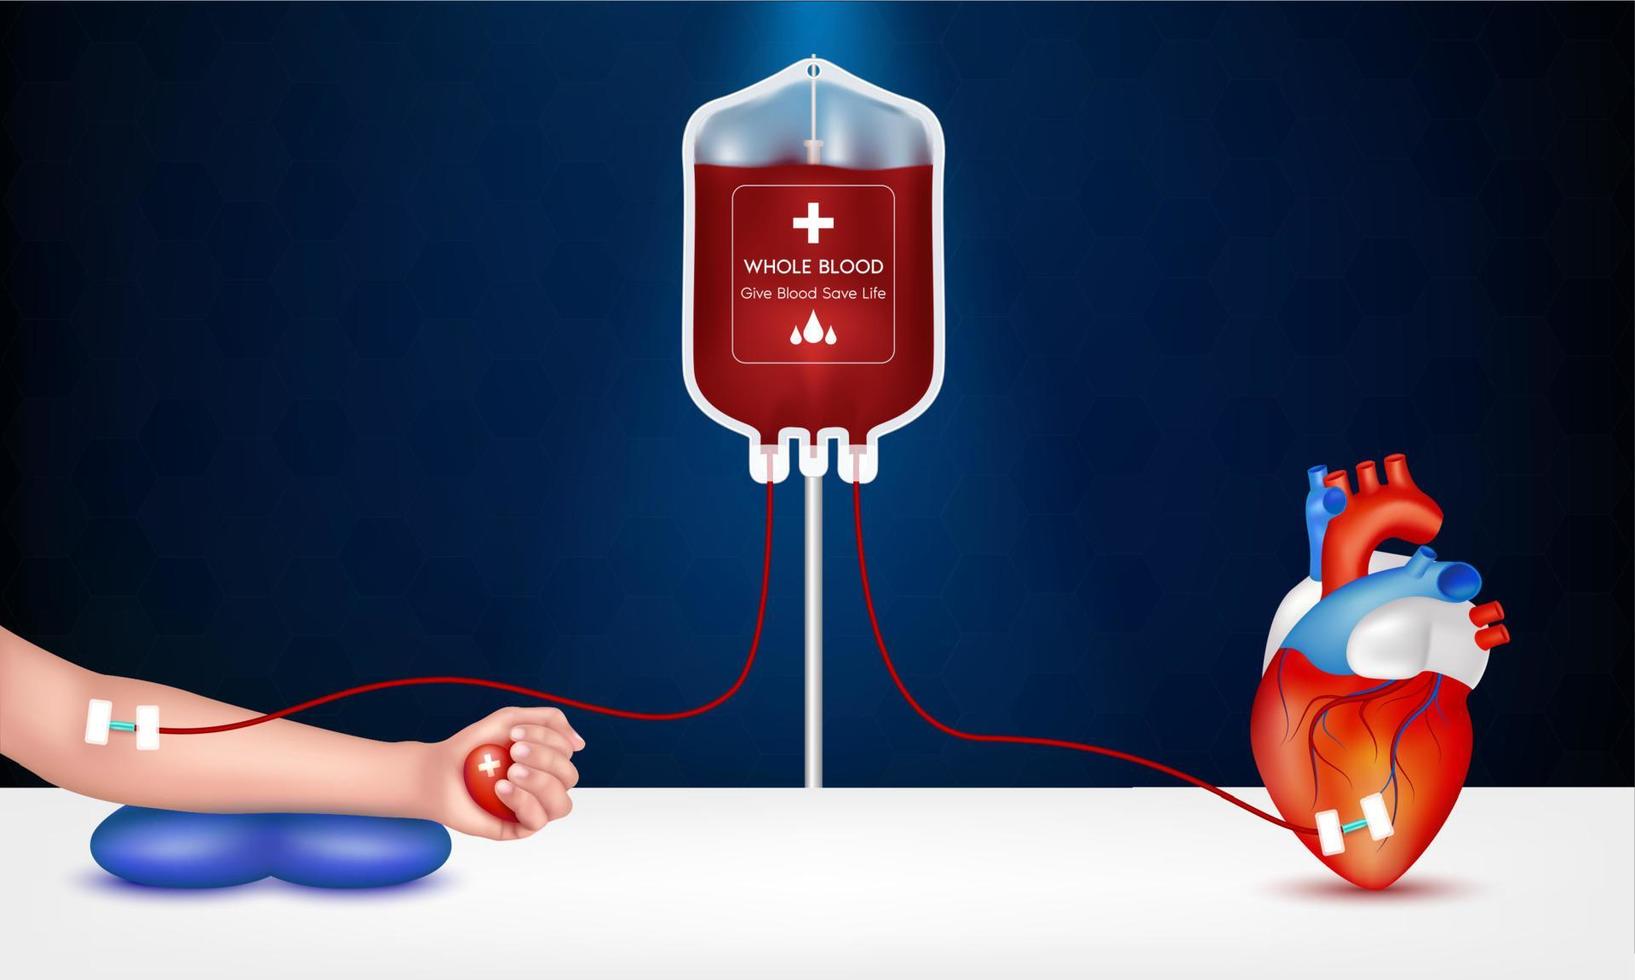 Empfänger, Blut und menschliches Herz zu spenden. Blutspendekonzept Herz medizinisches Zeichen. geben blut retten leben, weltblutspendetag 14. juni. 3d-vektor eps10 illustration. vektor